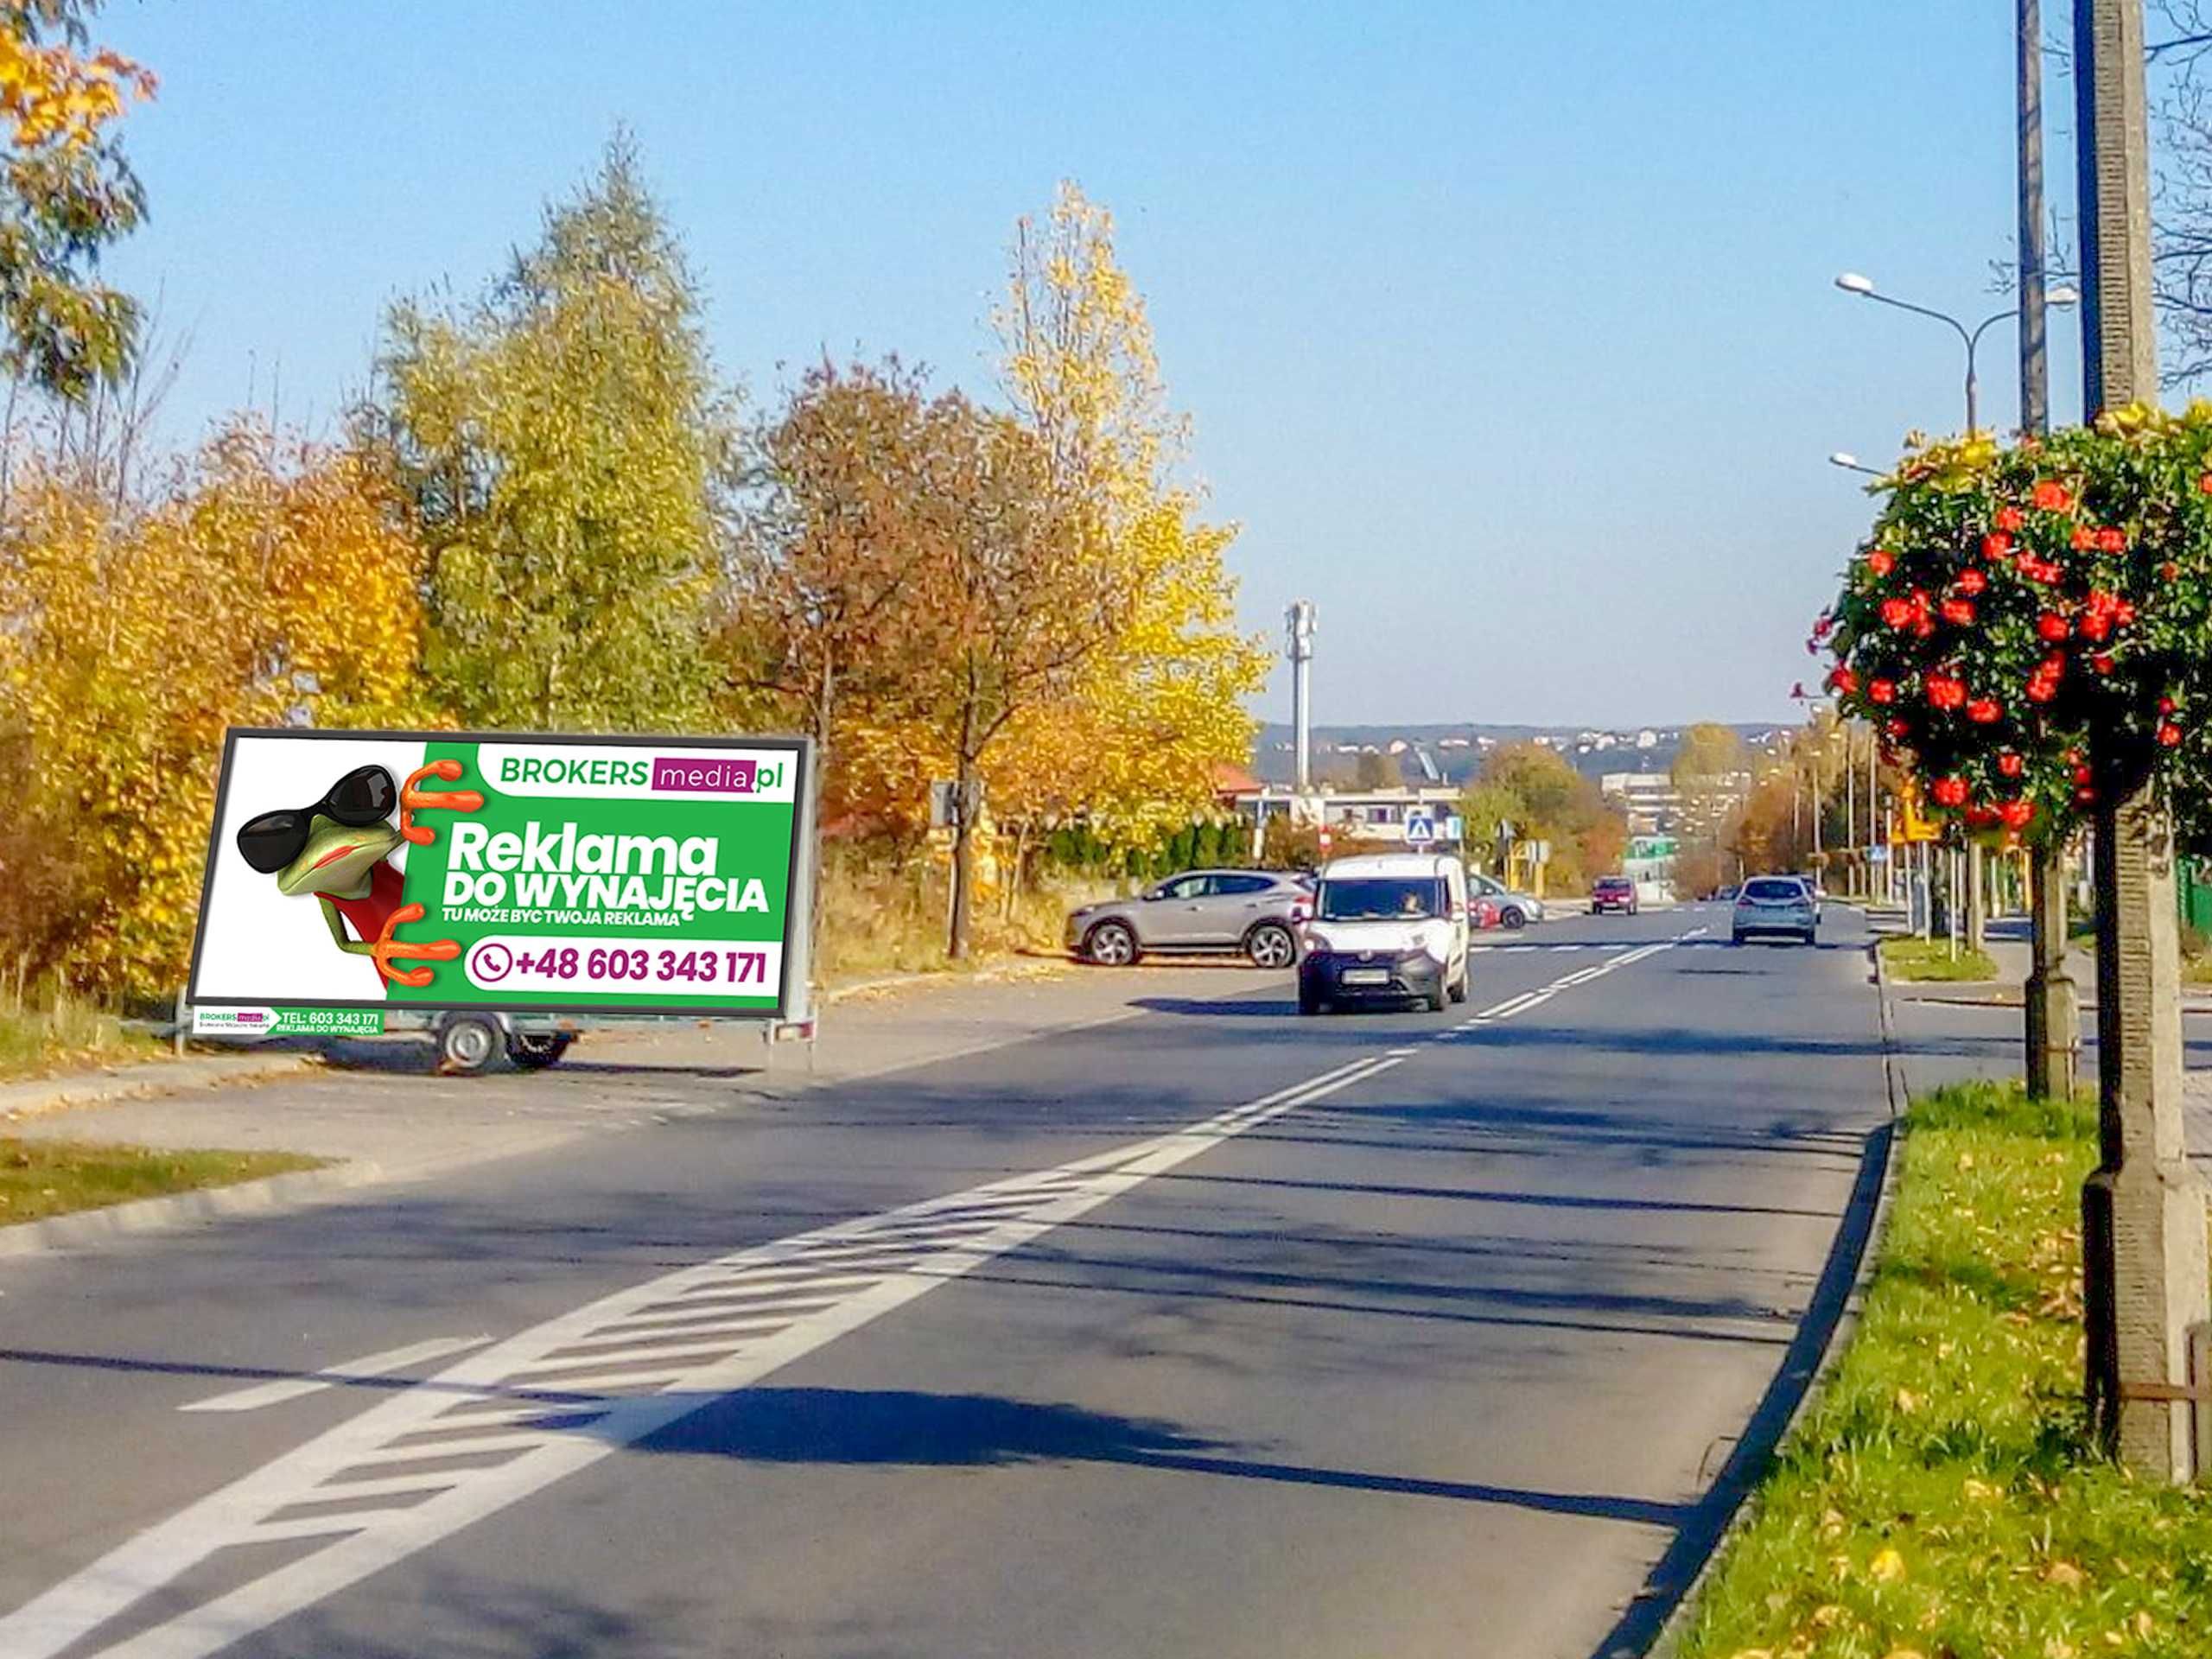 REKLAMA - Billboard Mobilny, Przyczepa Reklamowa